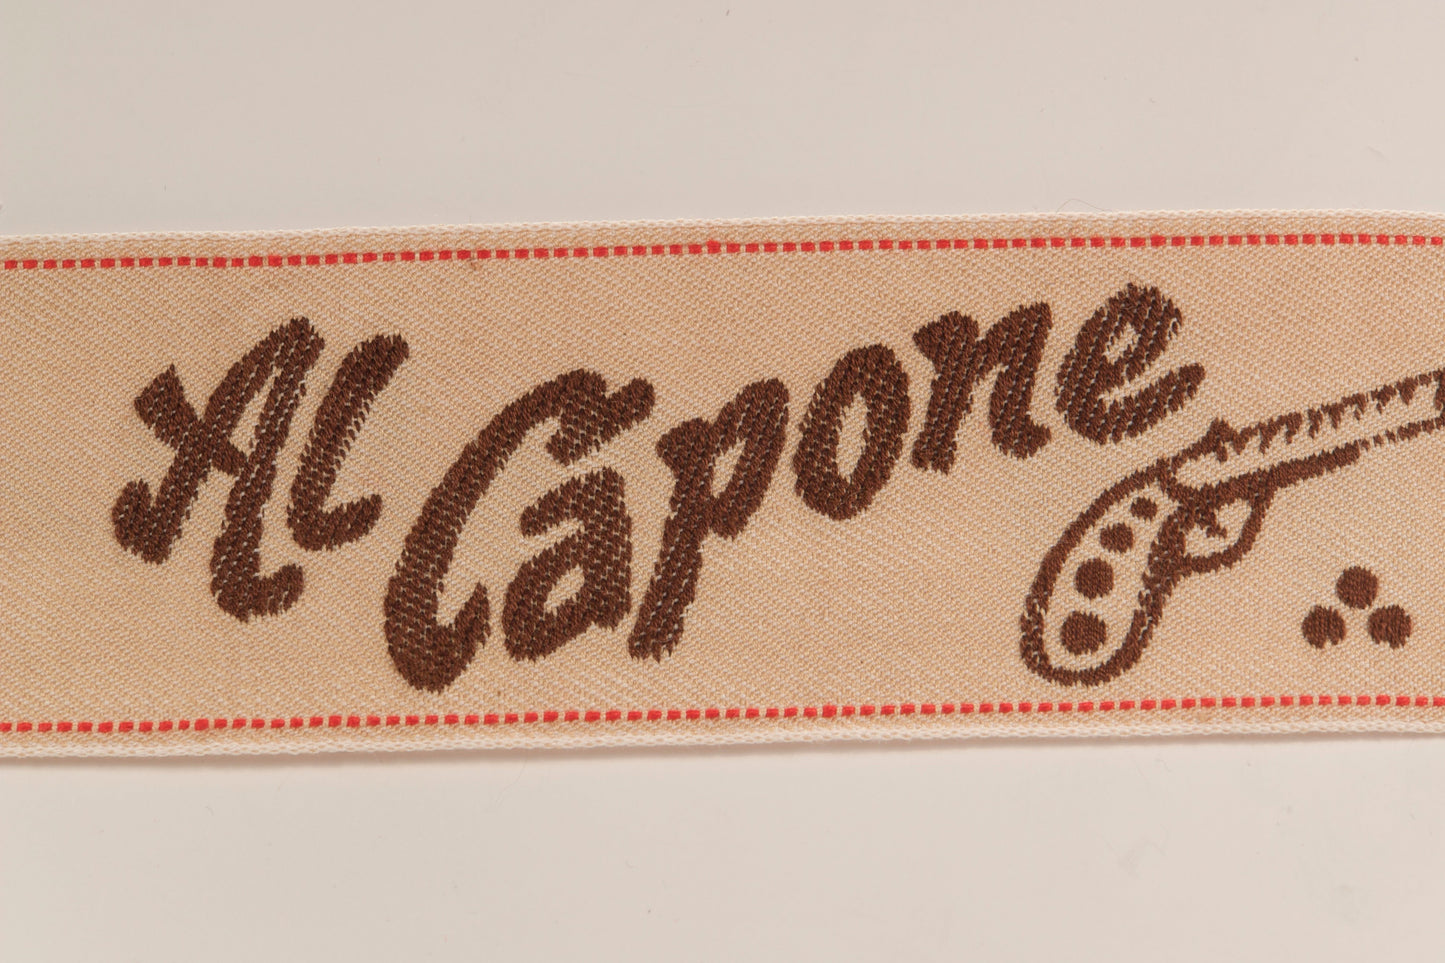 Ribbon w/ text "Al Capone" 52 mm